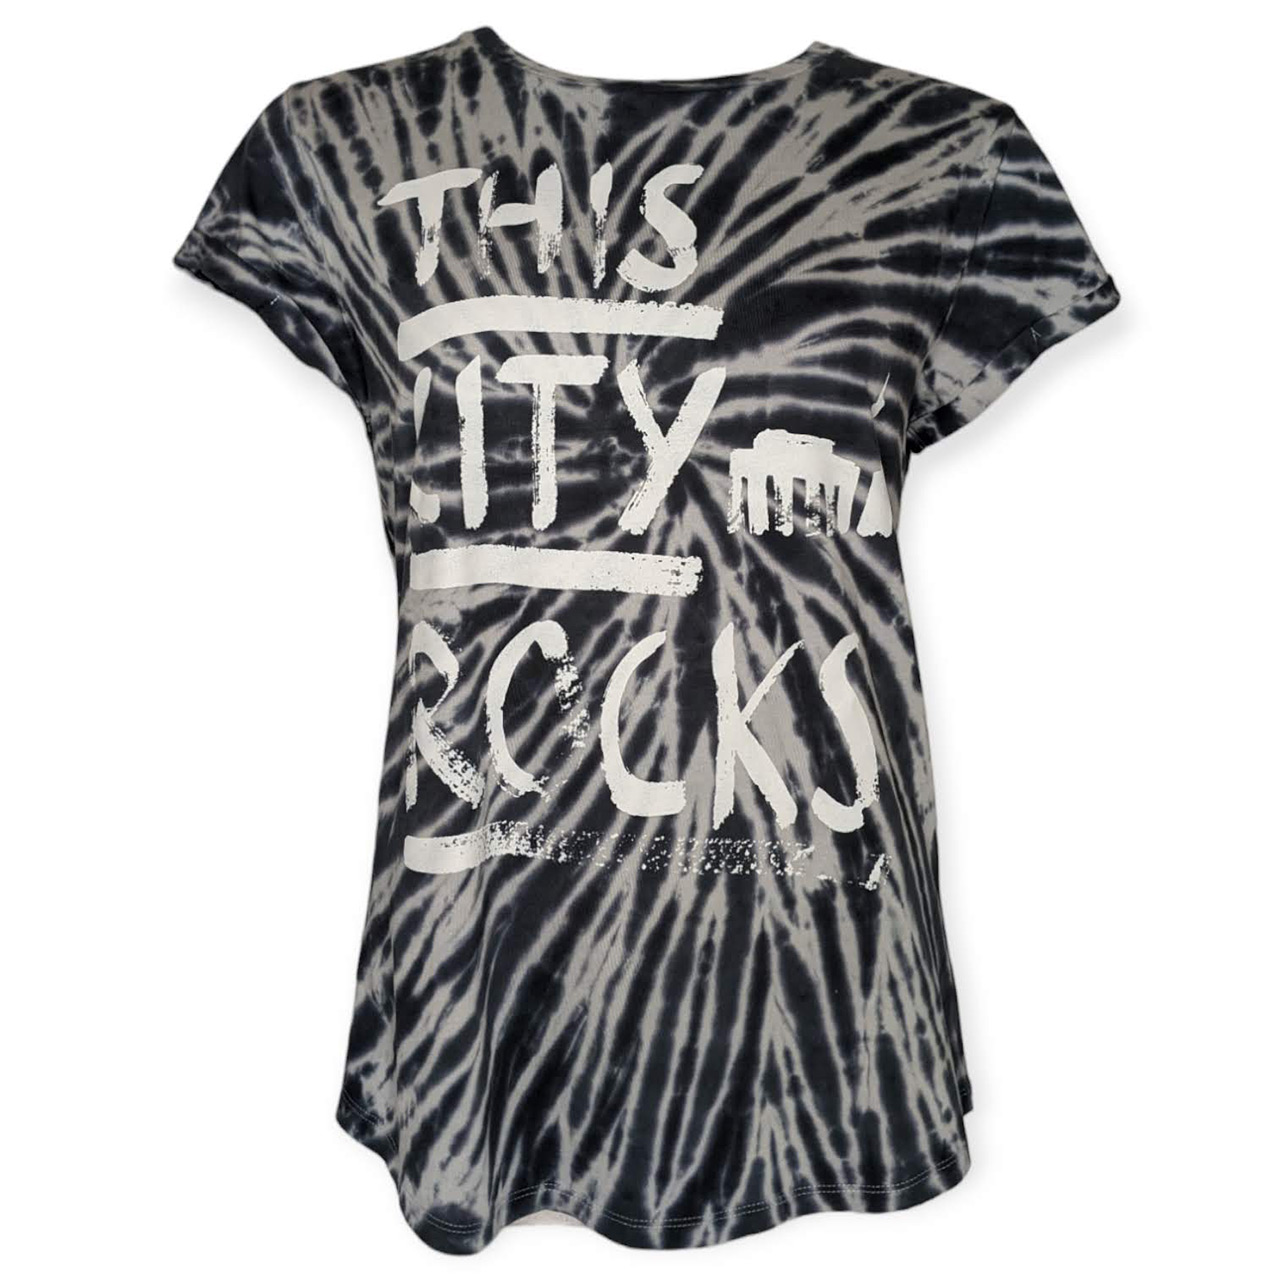 Tie Dye T-Shirt girls mit Schriftzug "This City Rocks" 